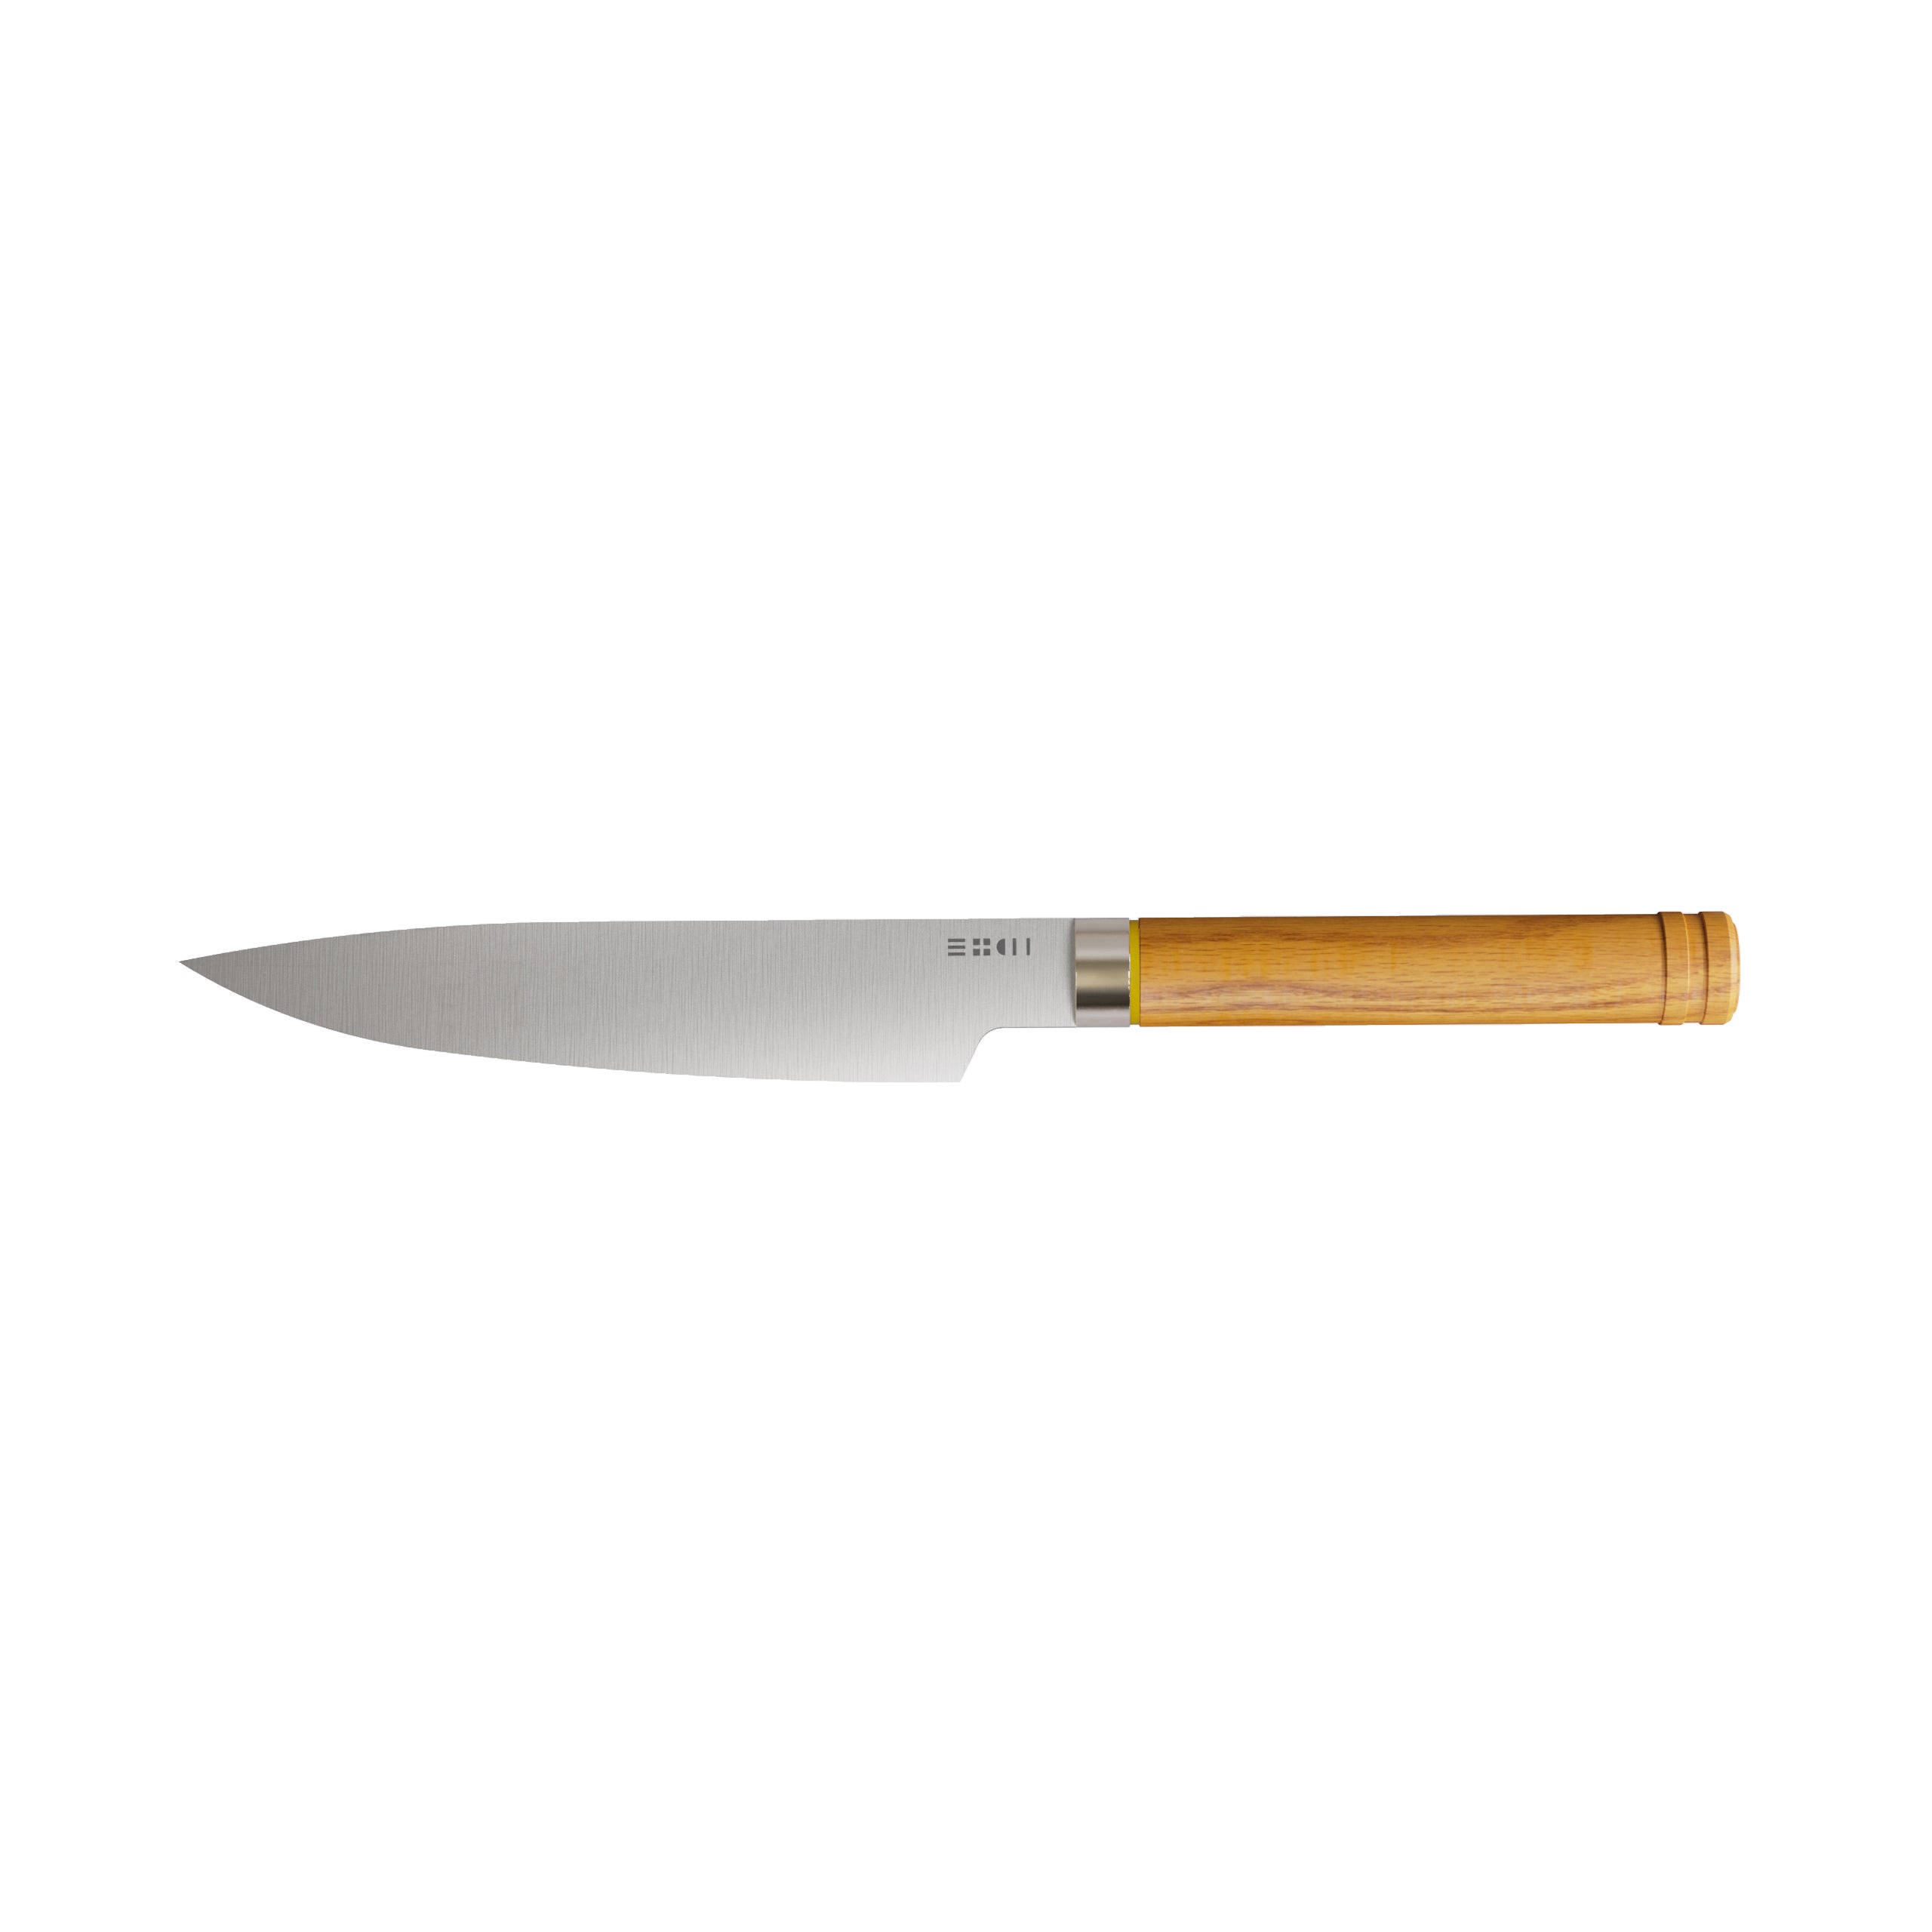 Couteaux professionnels de cuisine : Tous les couteaux de cuisine